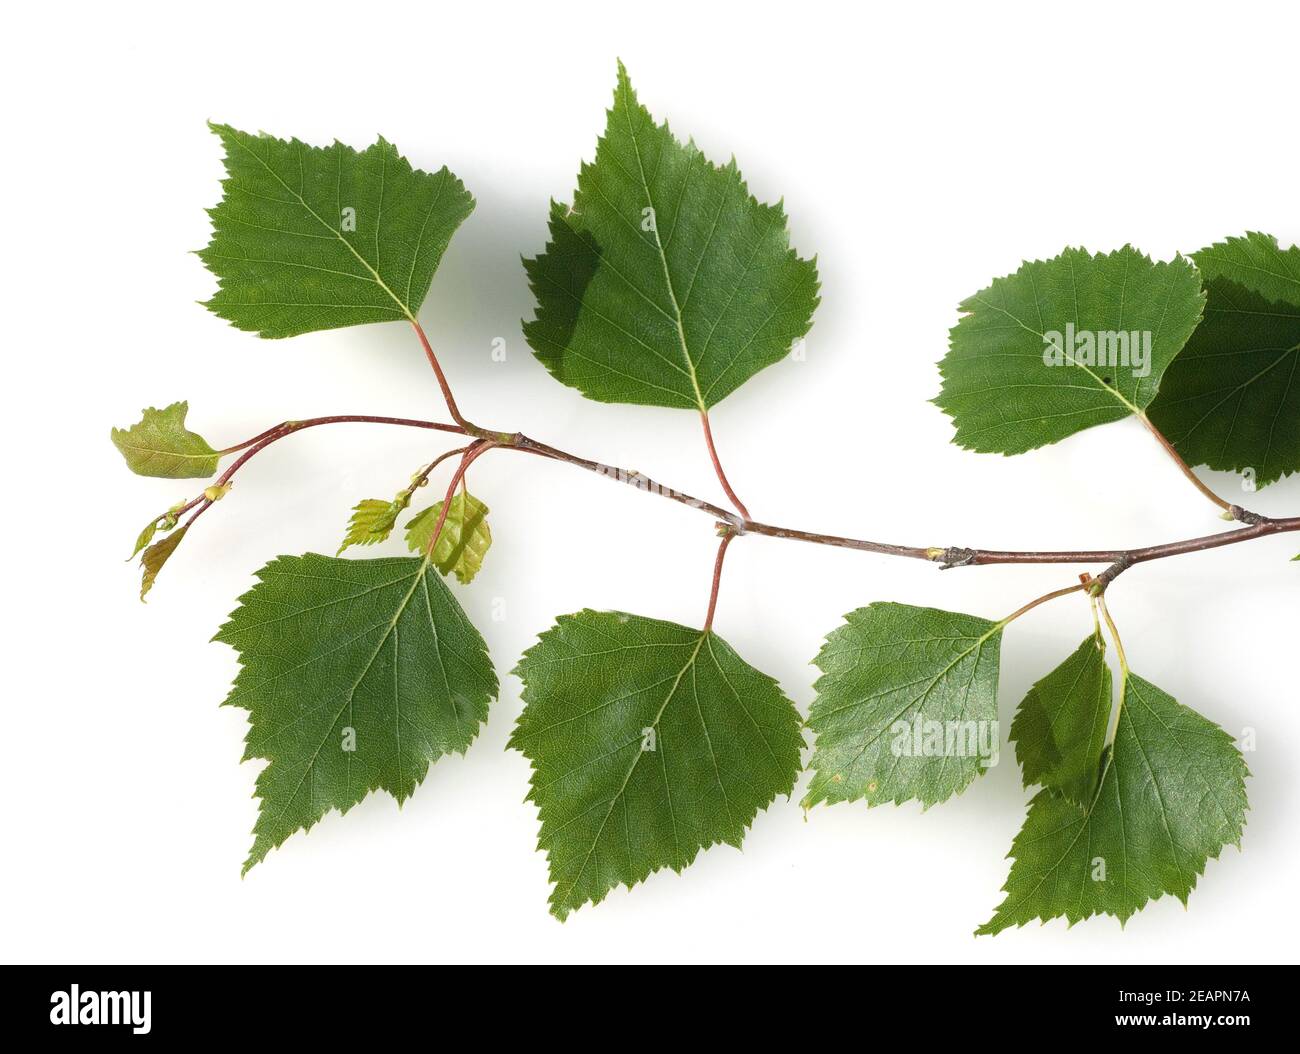 Birkenblaetter vom Birkenbaum, Lateinischer Name betula, Stock Photo